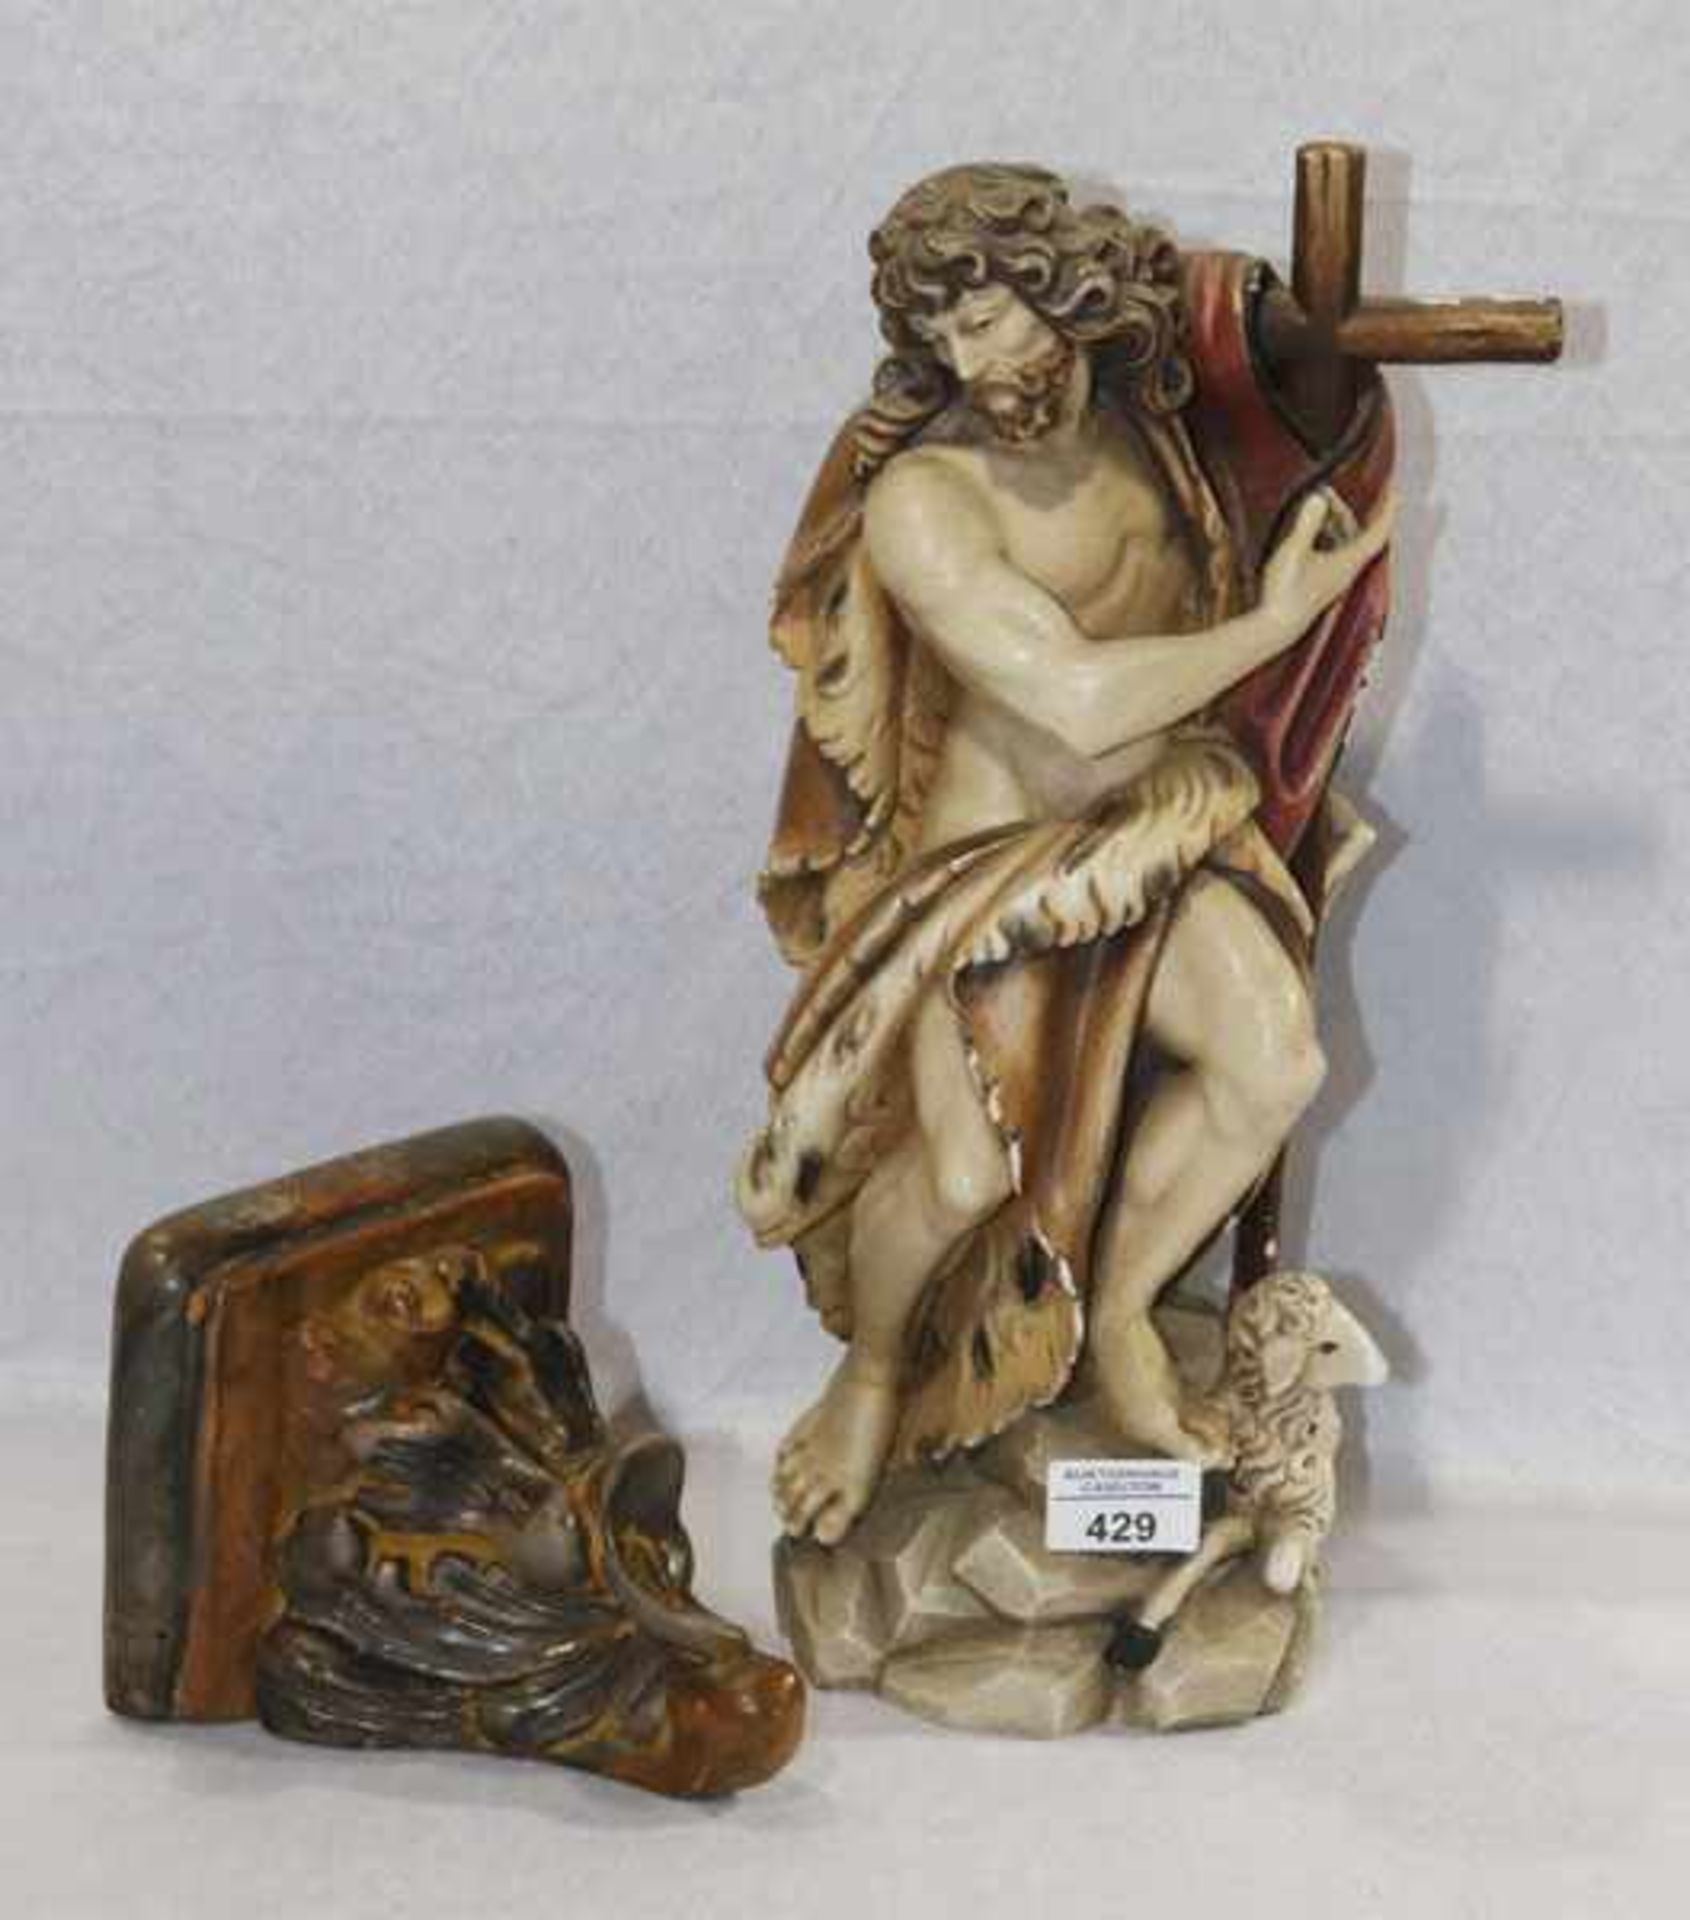 Holz Figurenskulptur 'Johannes der Täufer', farbig gefaßt, bestossen und Farbablösungen, H 39 cm,